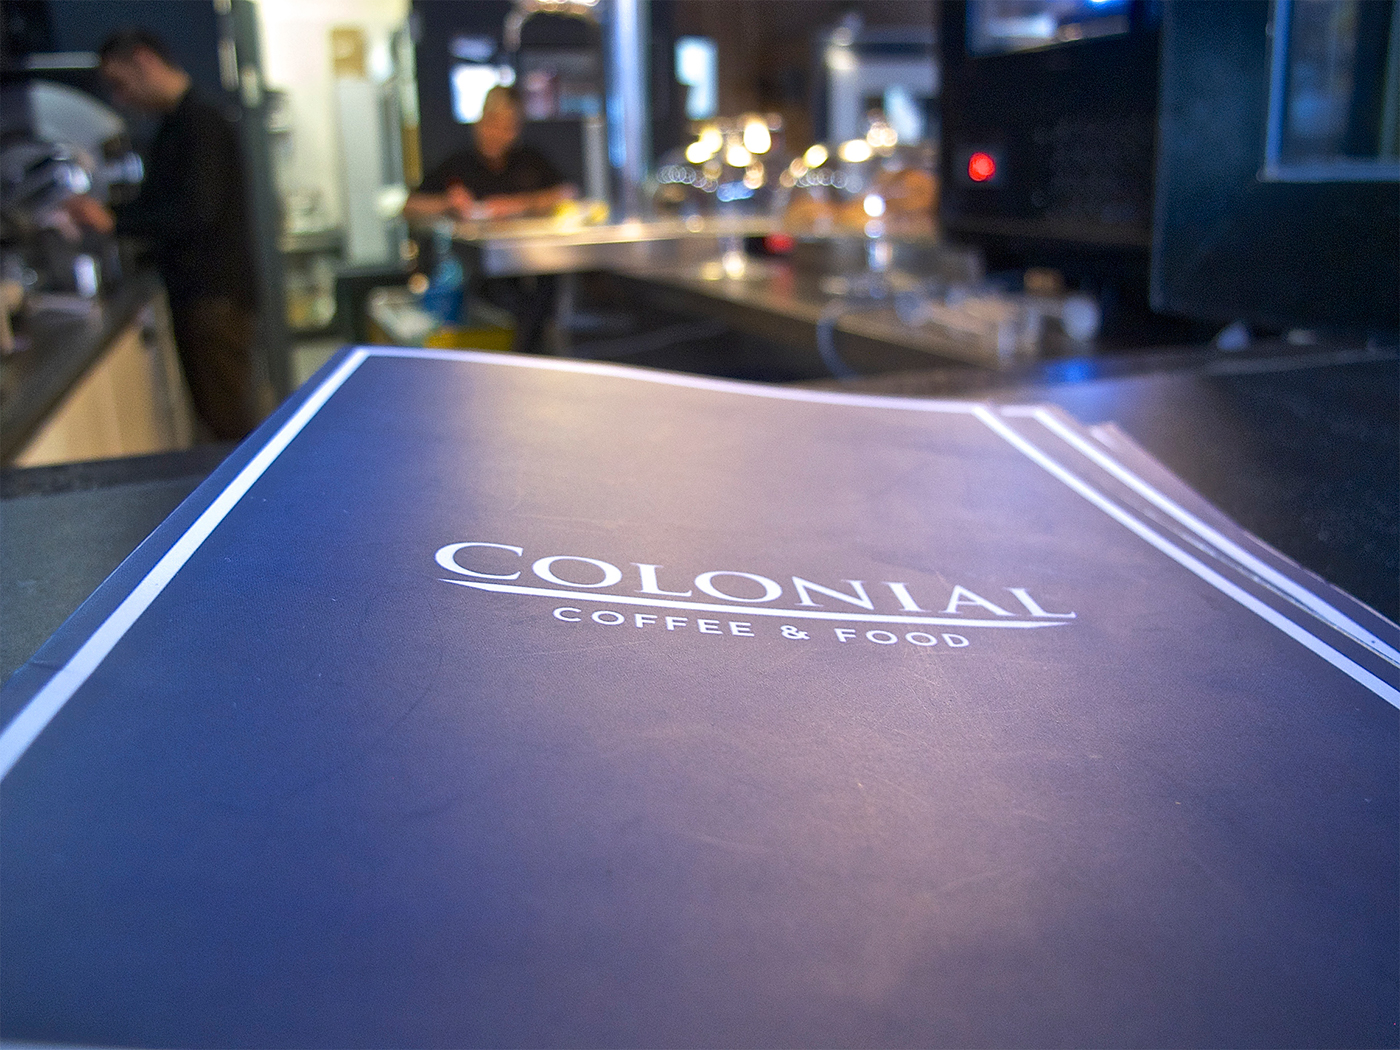 COLONIAL CAFÉ menu design Mind Komplex palma de mallorca